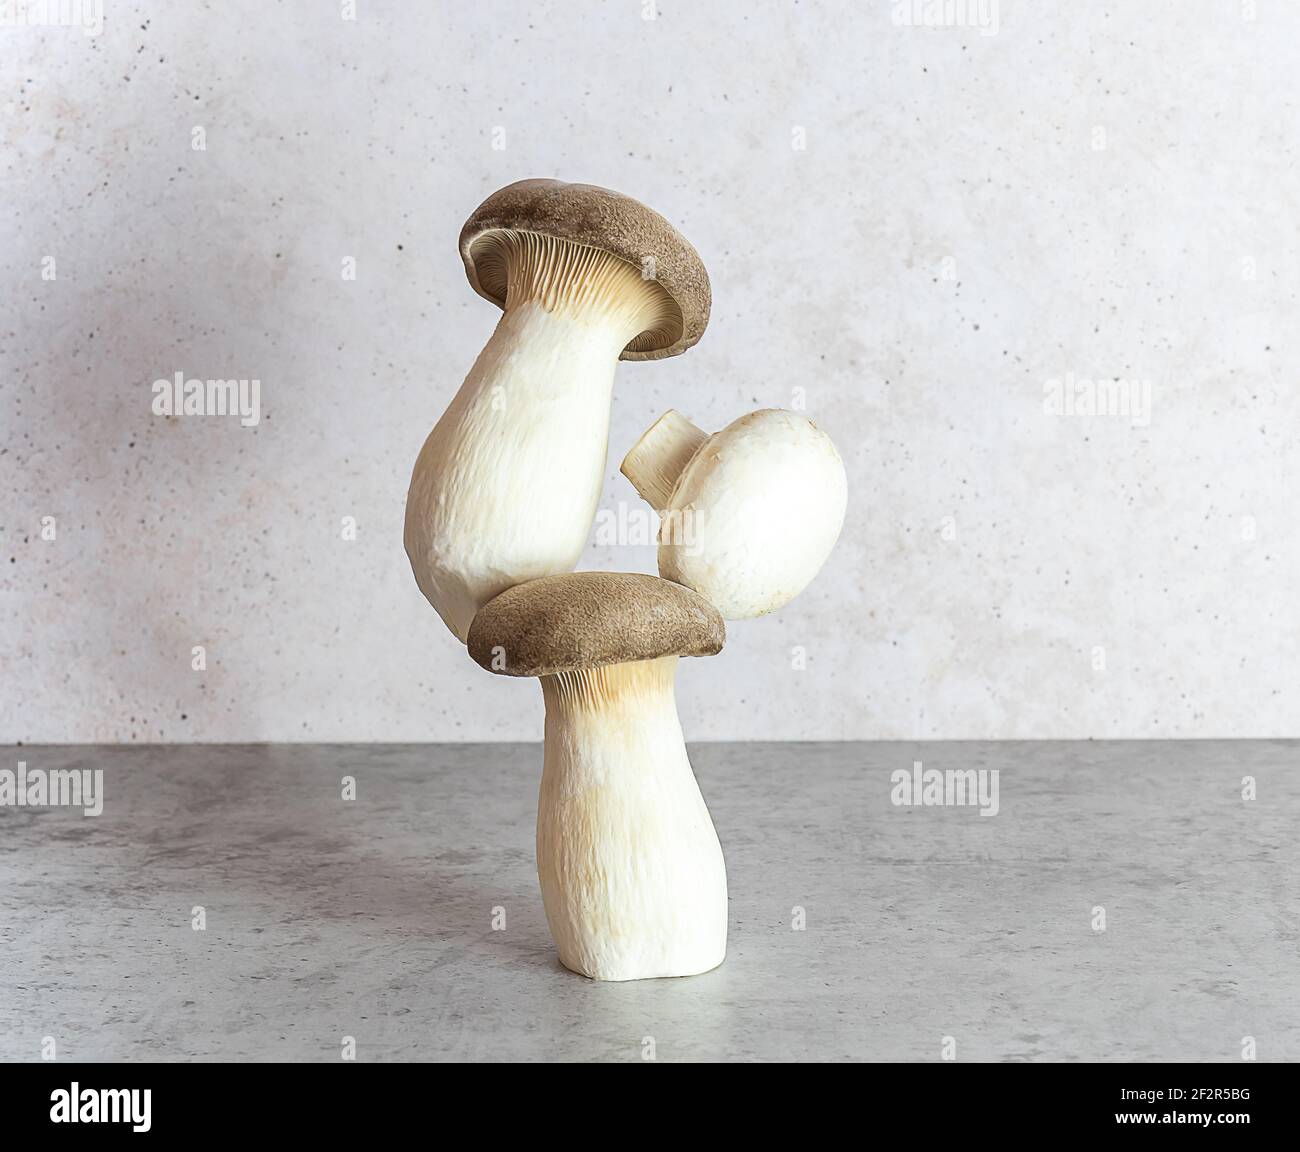 Eringi or king oyster mushroom. Equilibrium floating food balance. Stock Photo